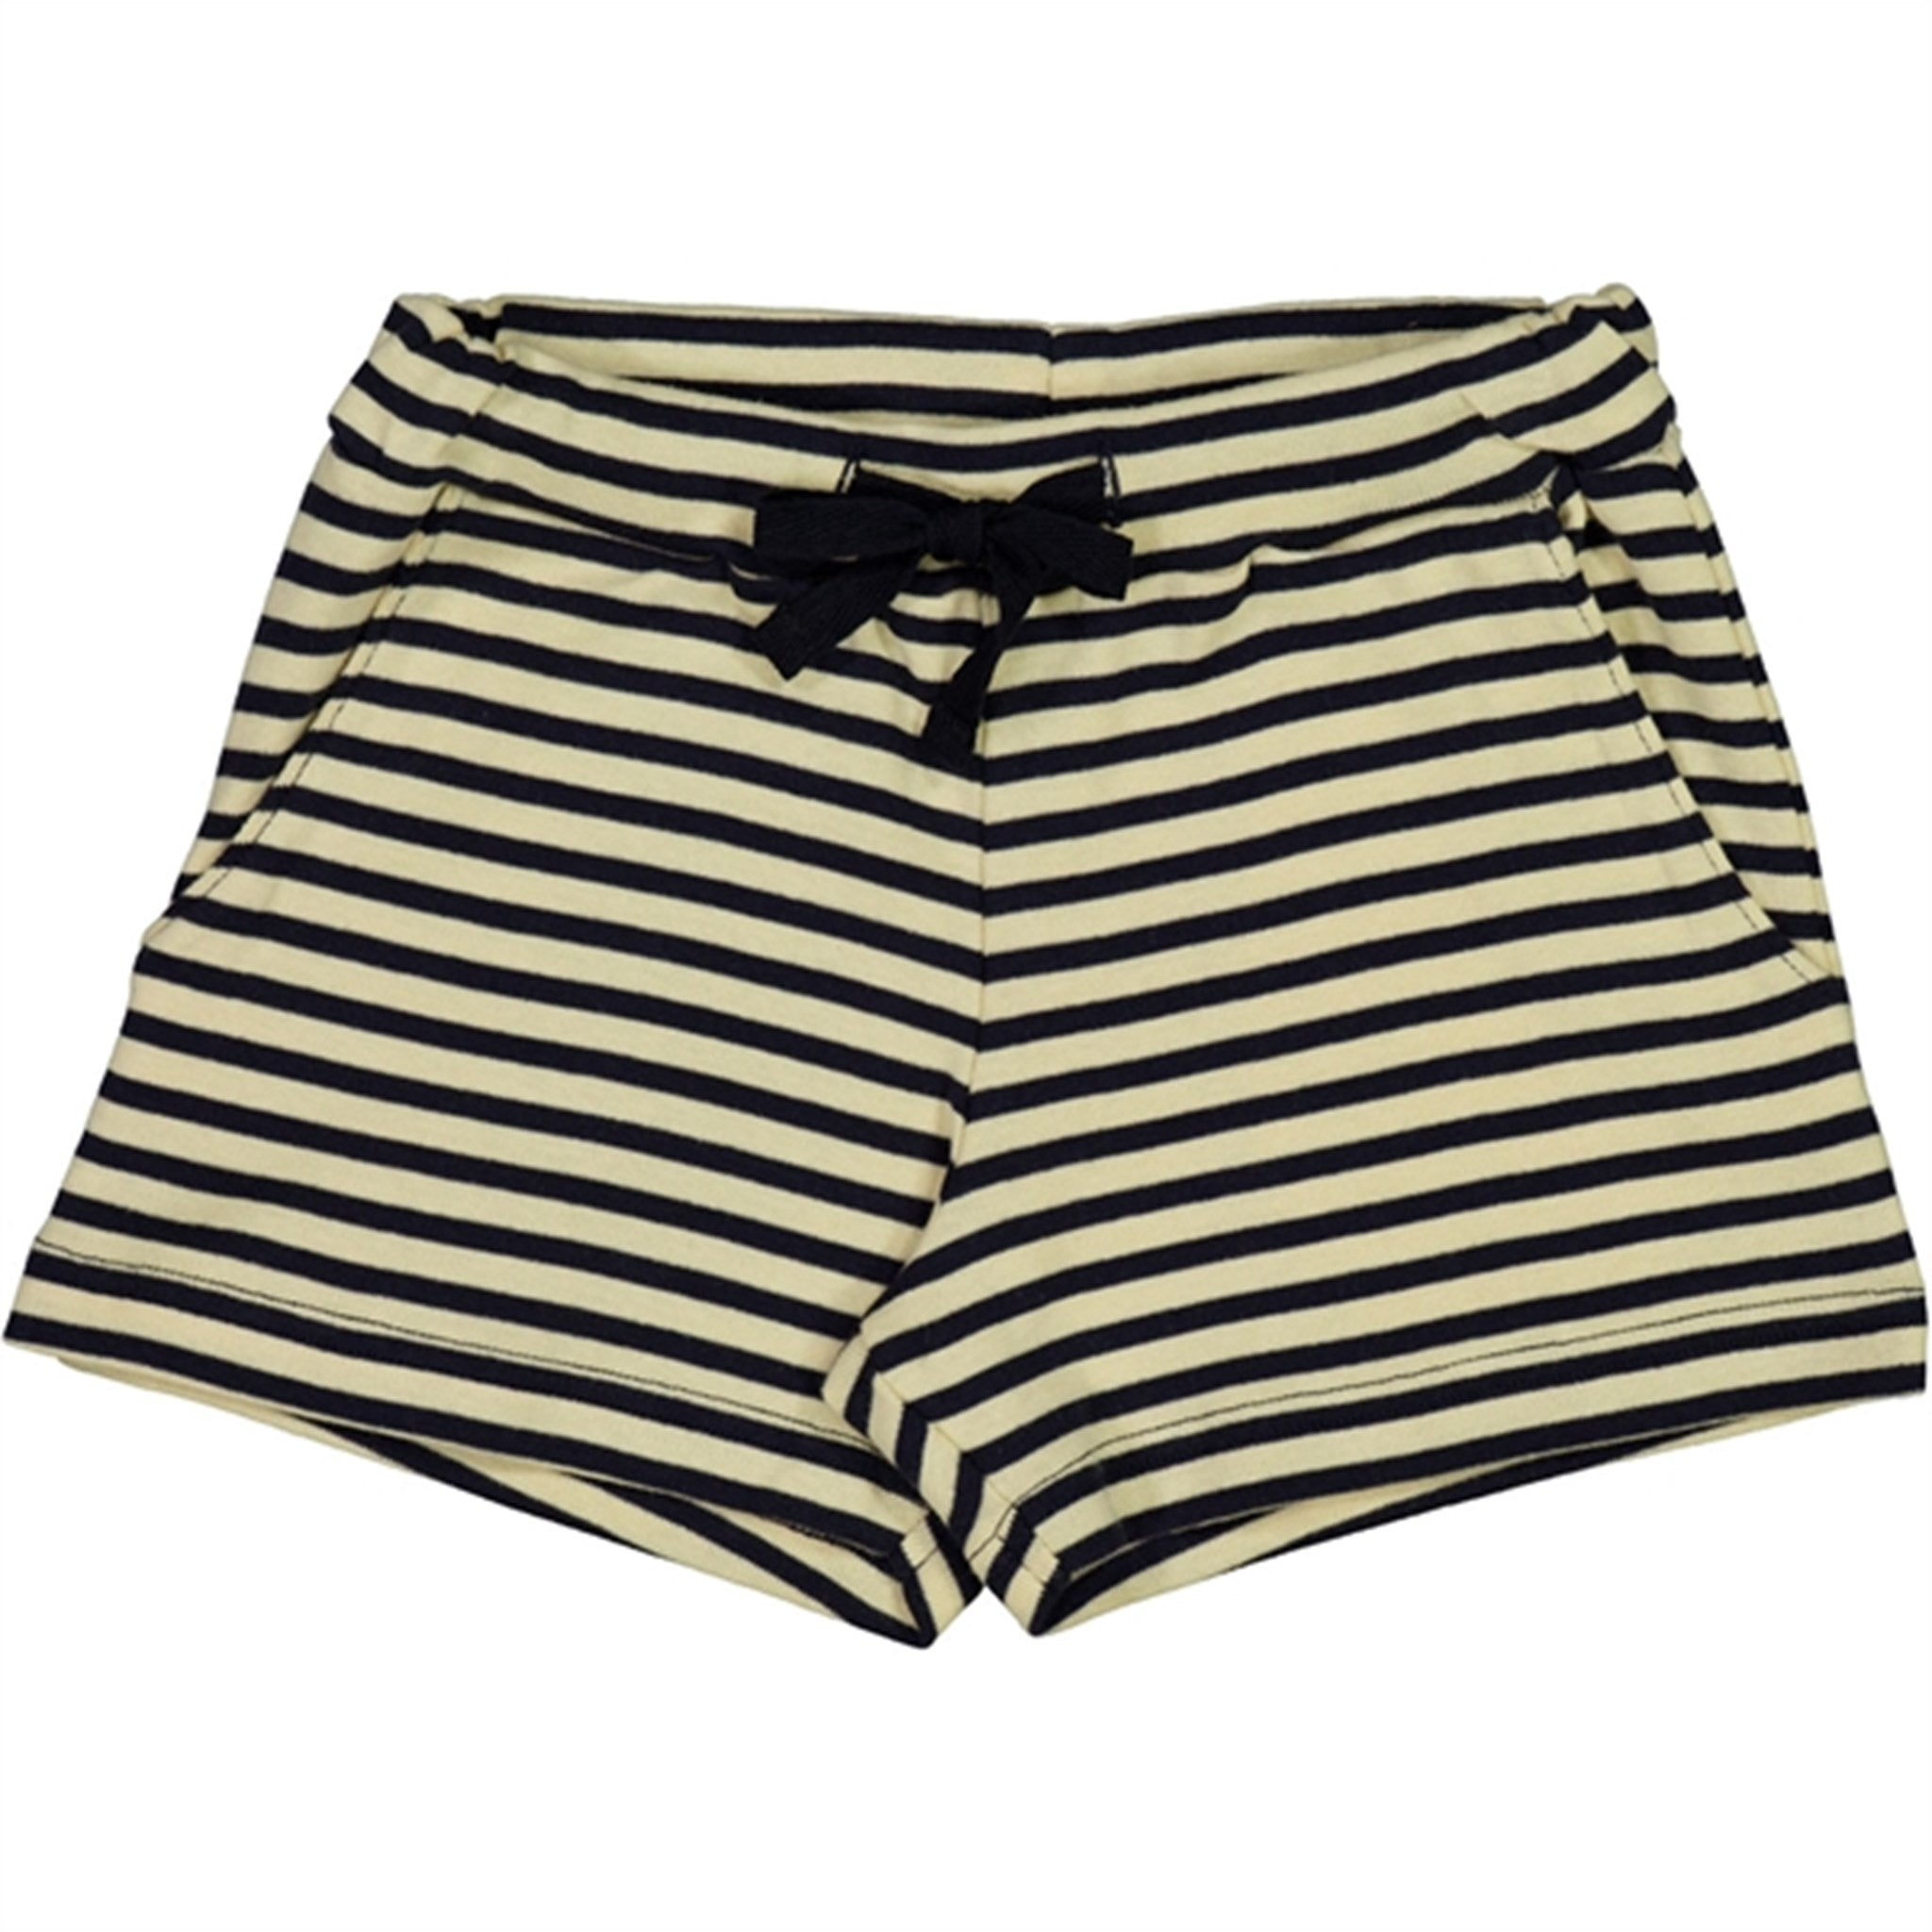 Wheat Deep Wave Stripe Walder Shorts